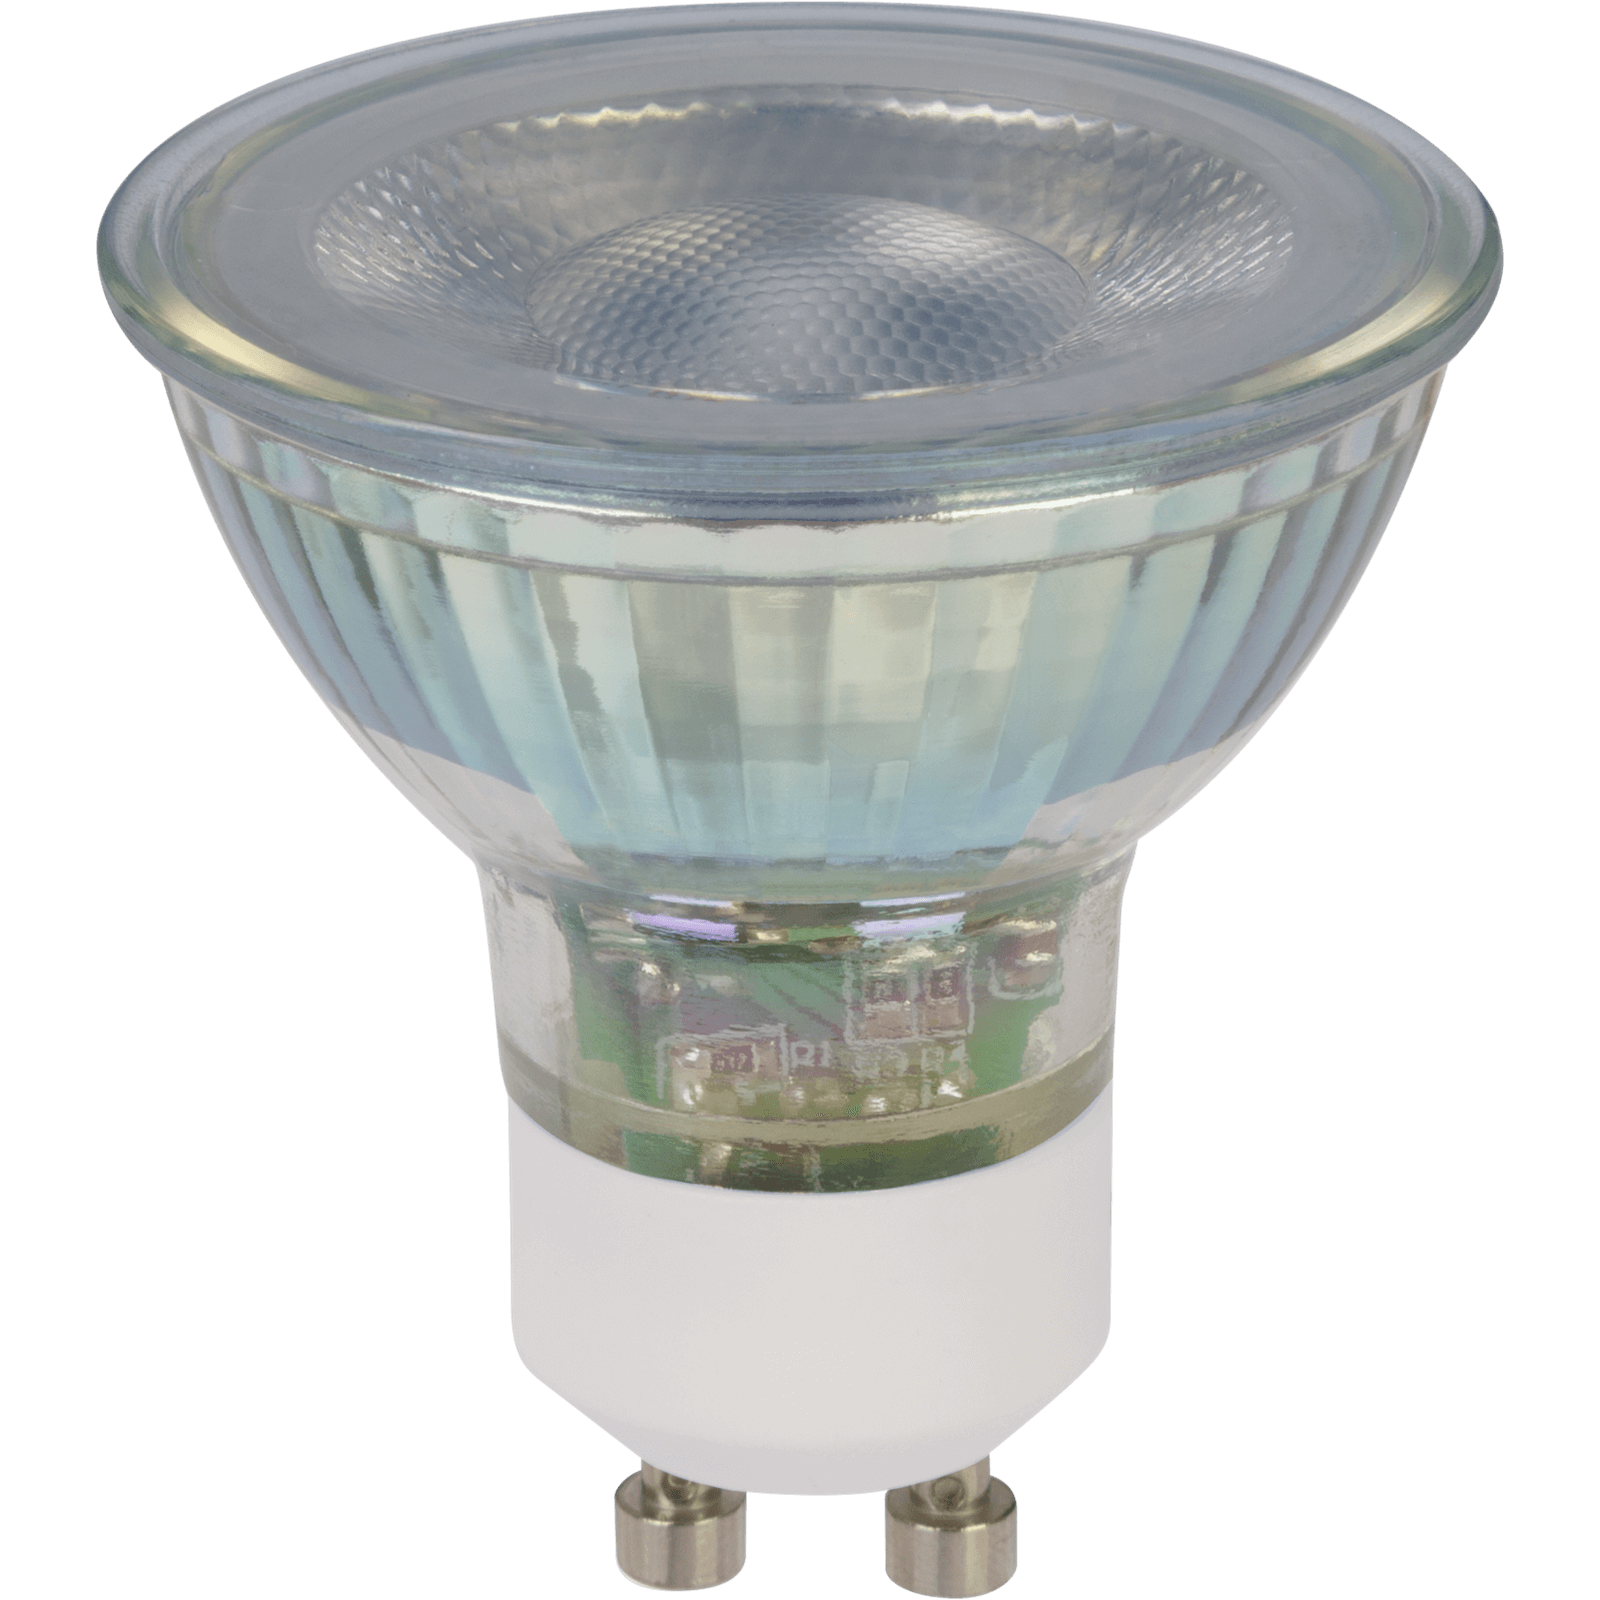 TCP LED Glass GU10 50W Warm Light Bulb - 4 pack